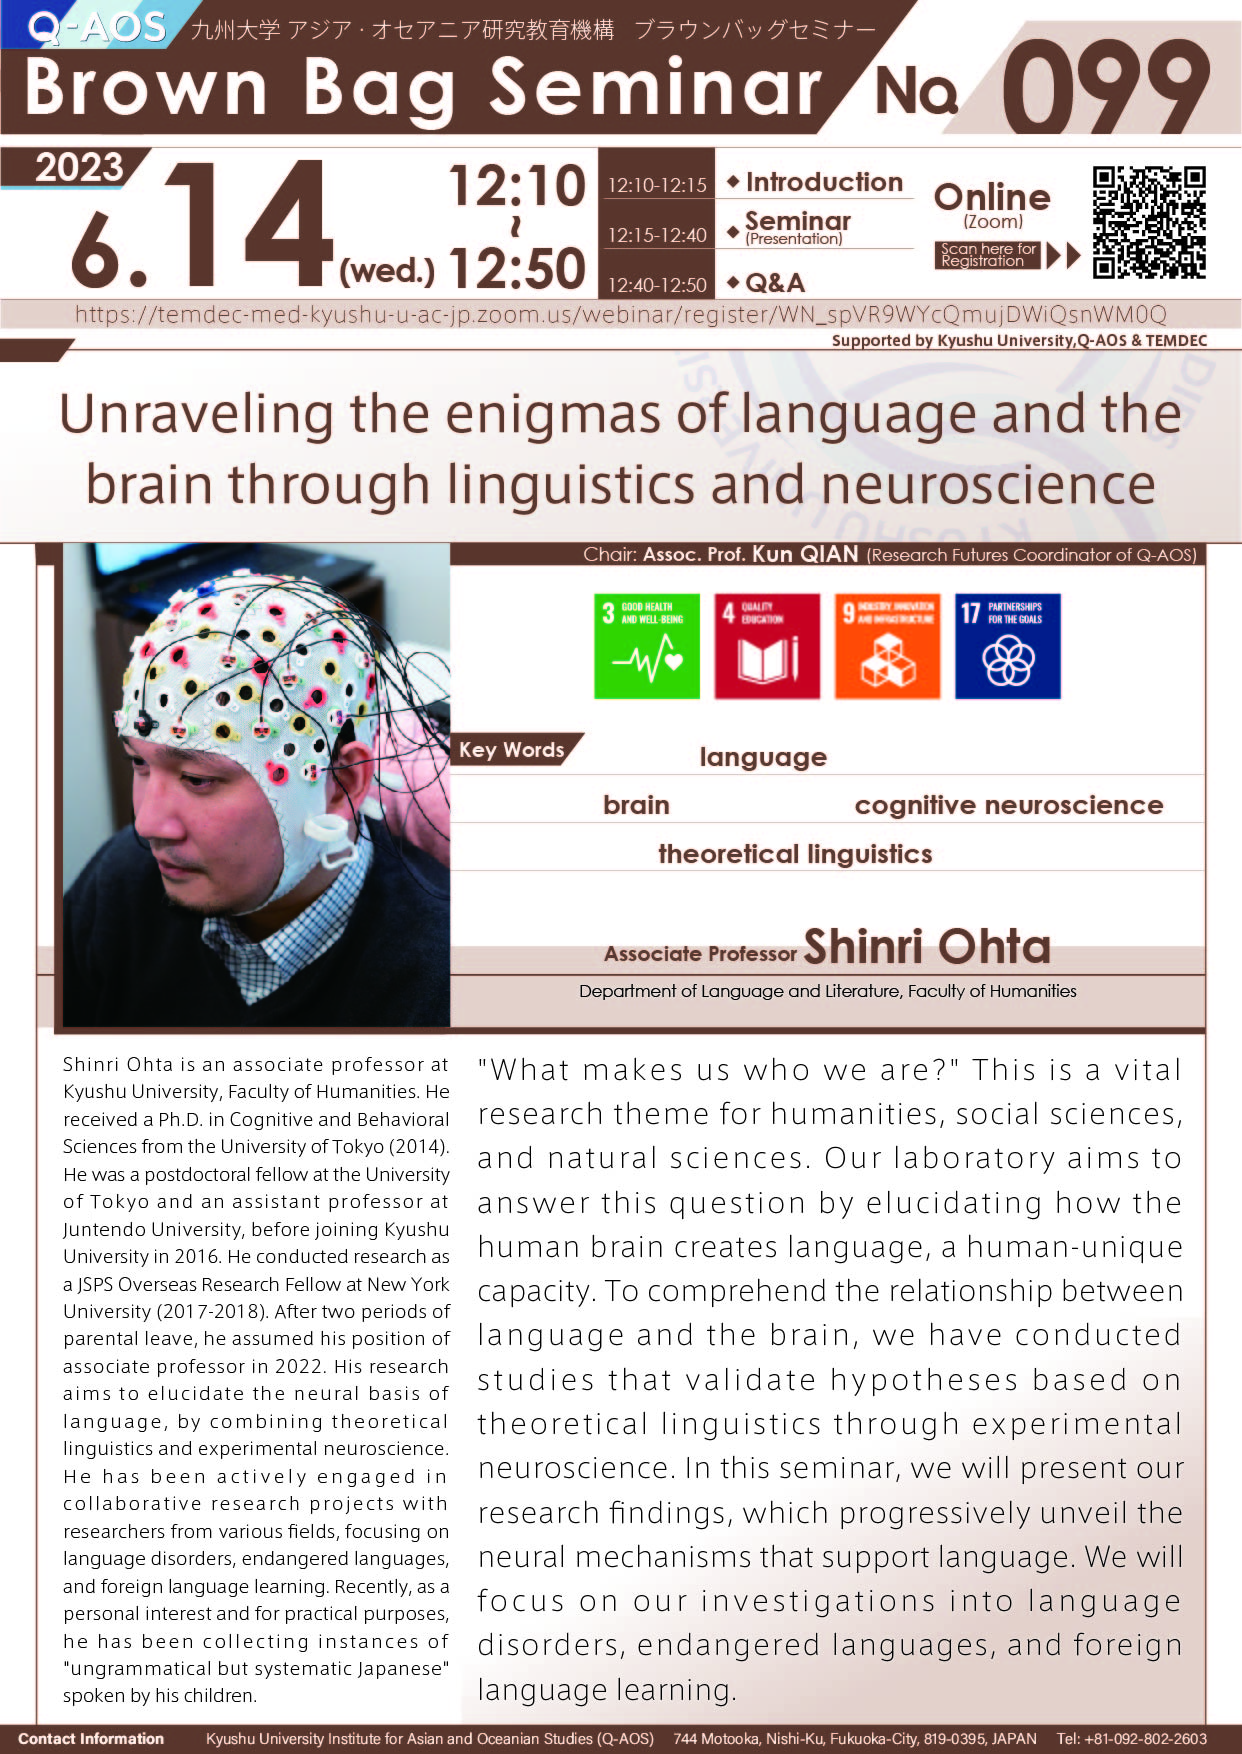 アイキャッチ画像：Q-AOS Brown Bag Seminar Series The 99th Seminar “Unraveling the enigmas of language and the brain through linguistics and neuroscience”